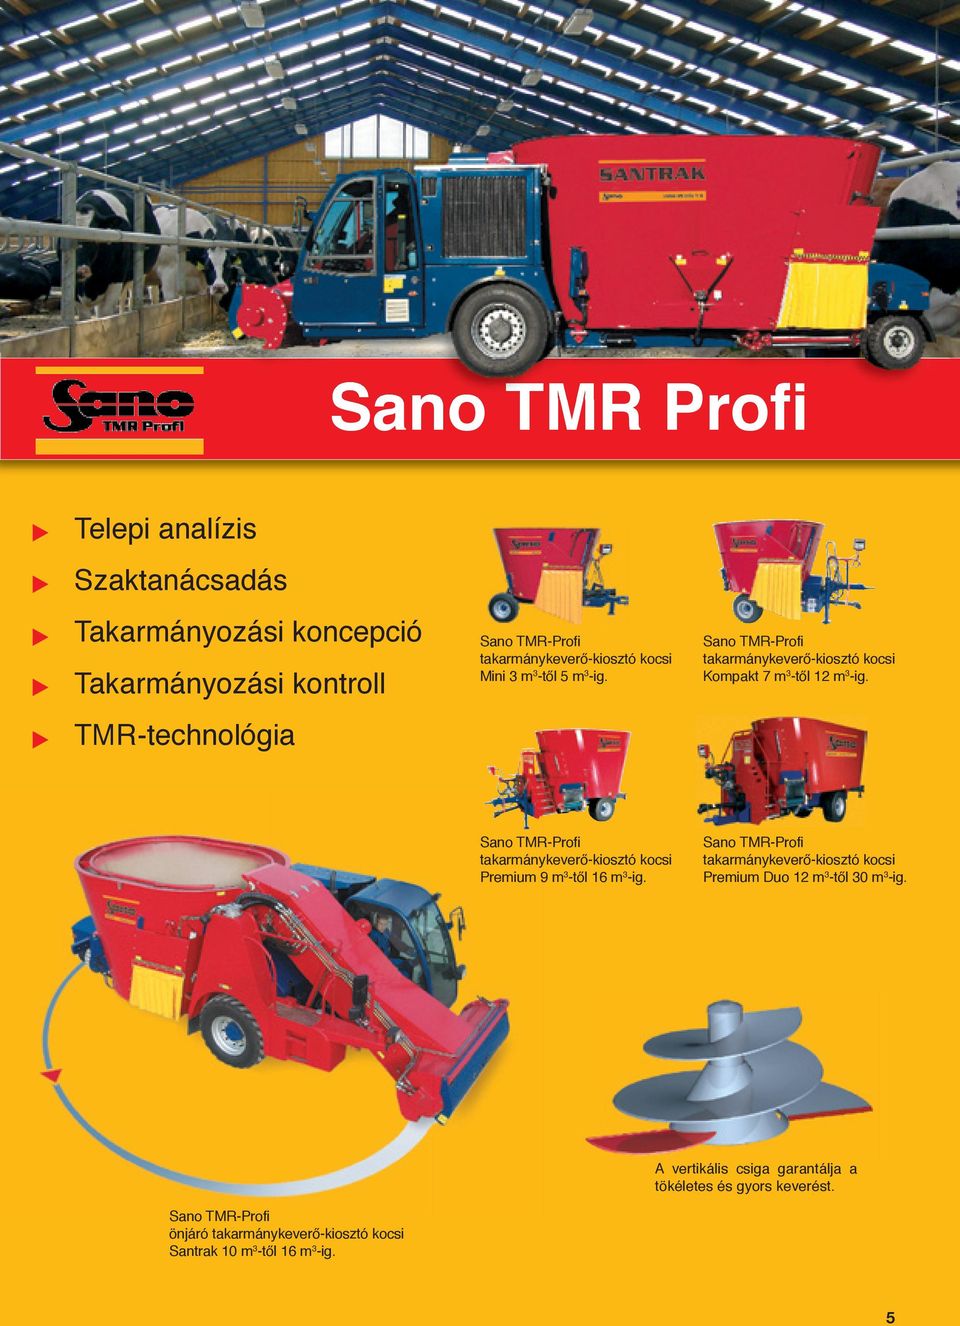 Sano TMR-Profi takarmánykeverő-kiosztó kocsi Premium 9 m 3 -től 16 m 3 -ig.